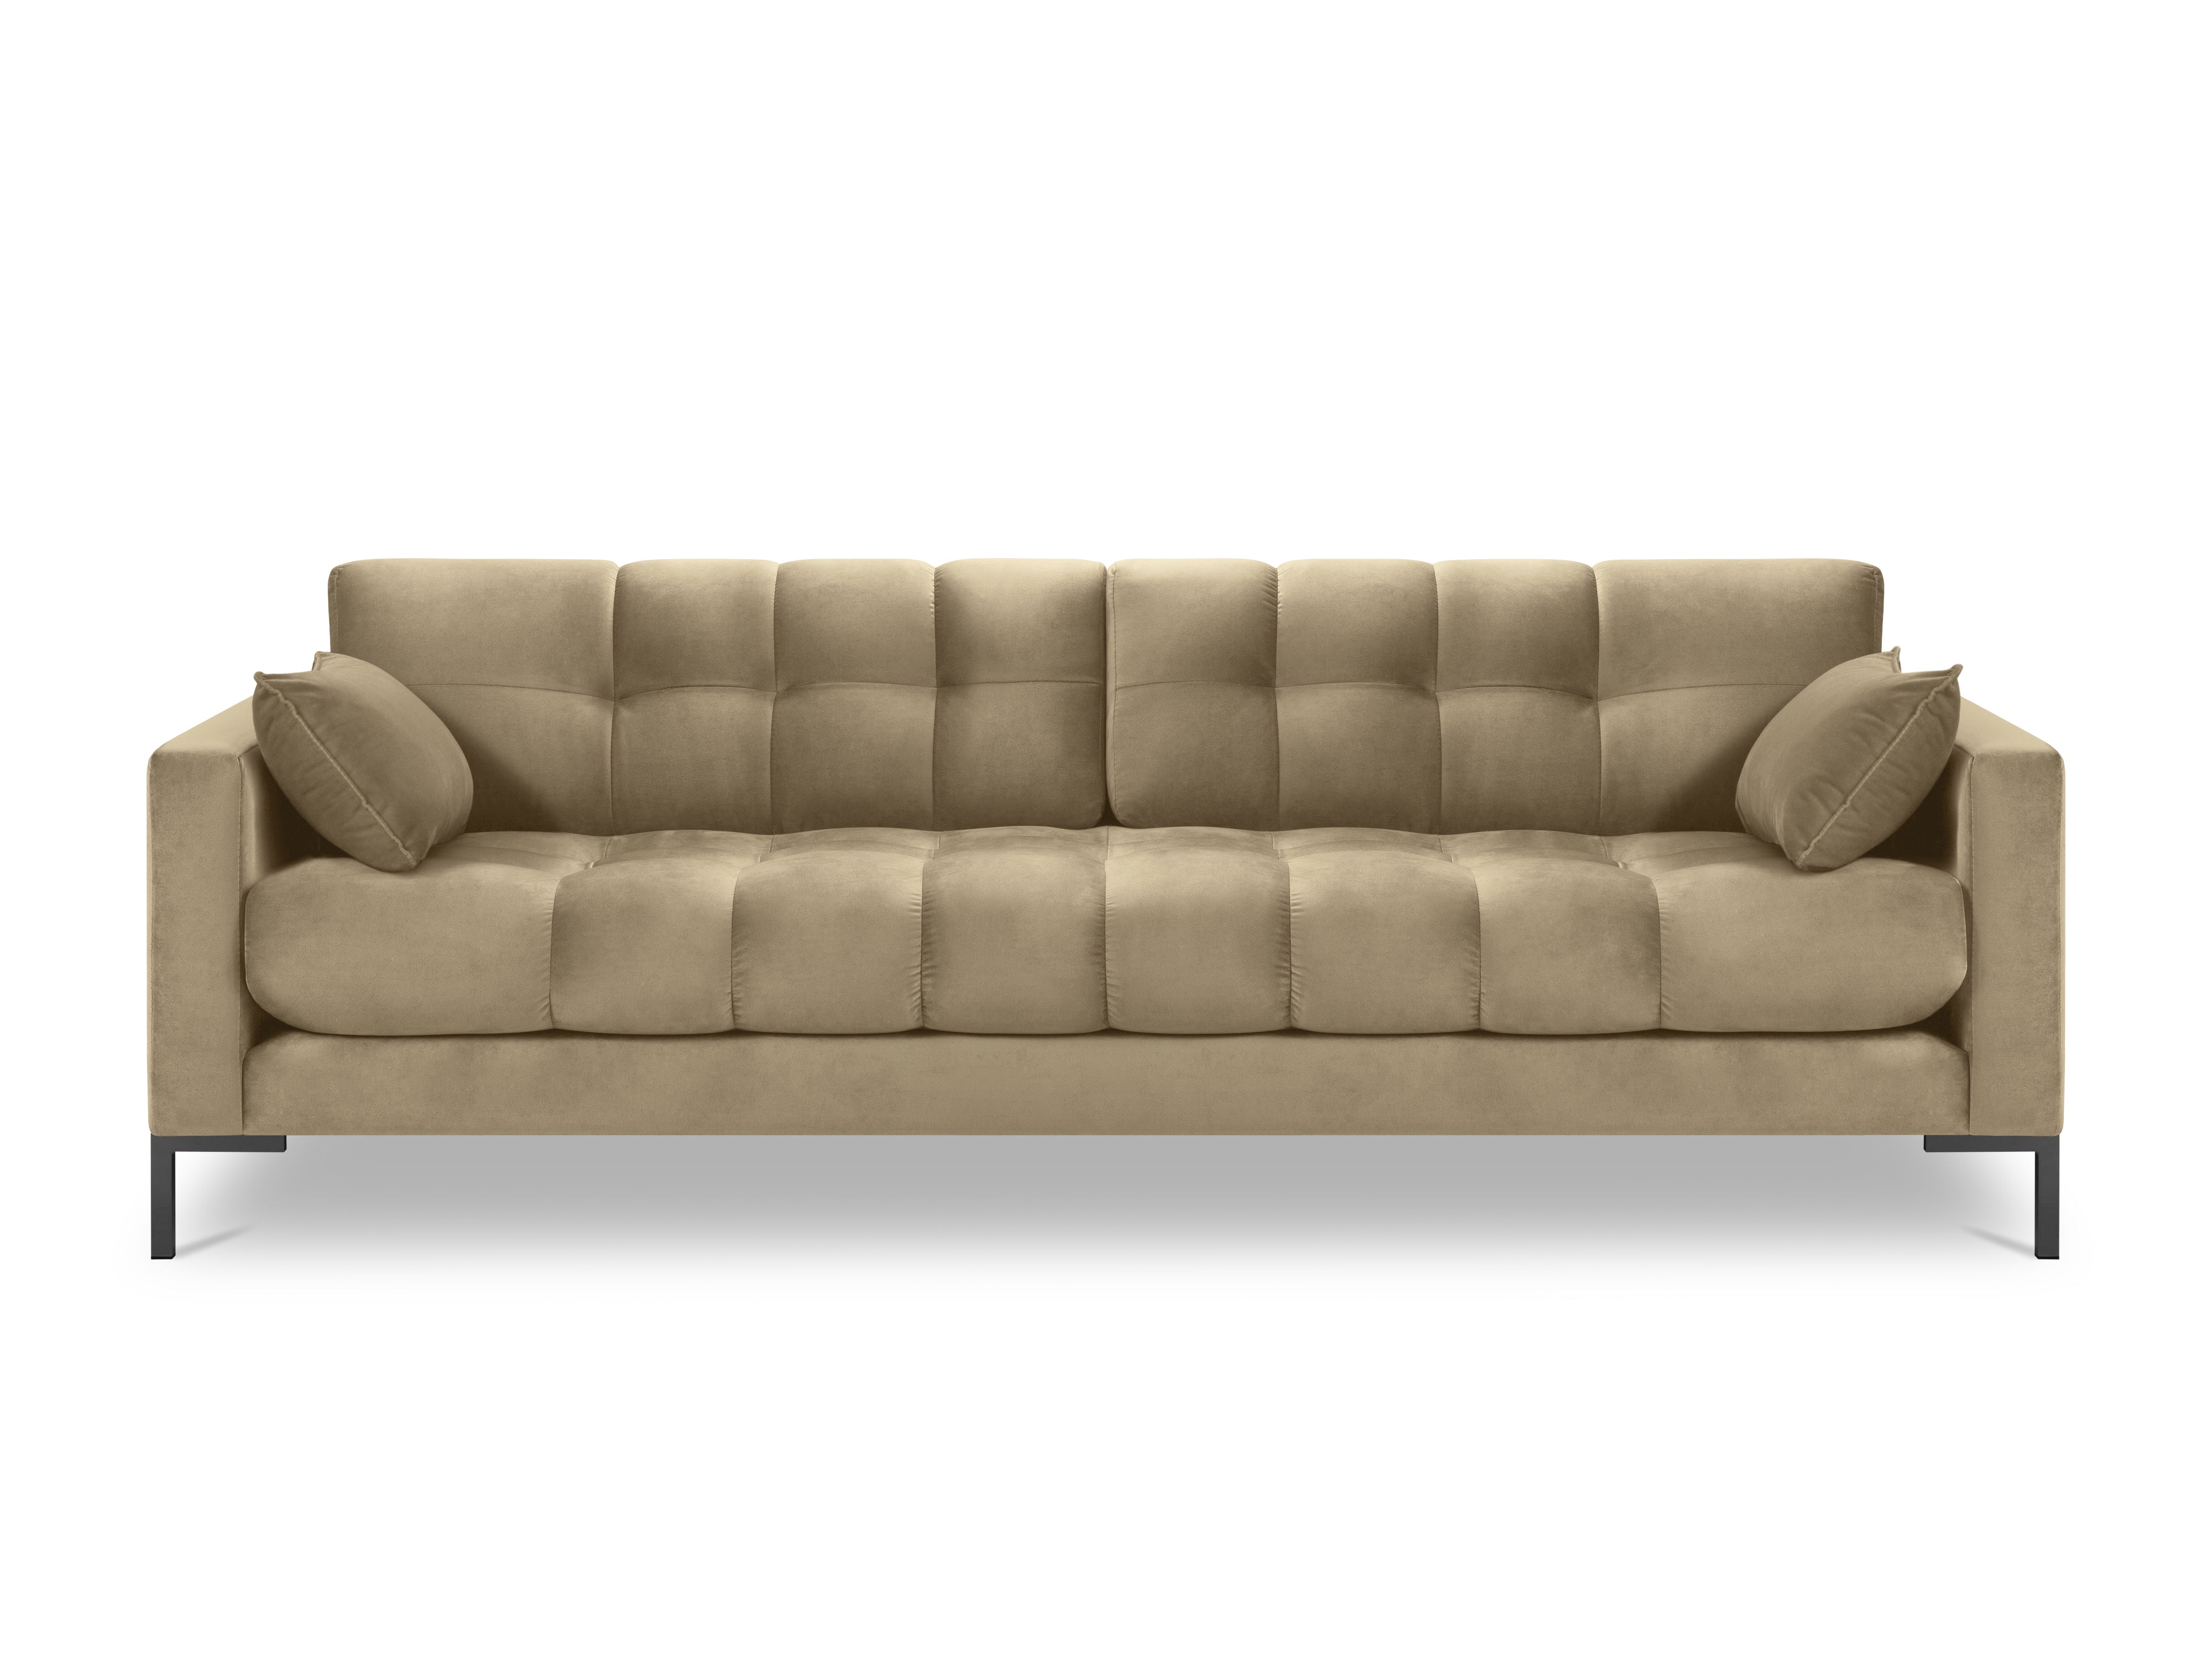 Beige velvet sofa